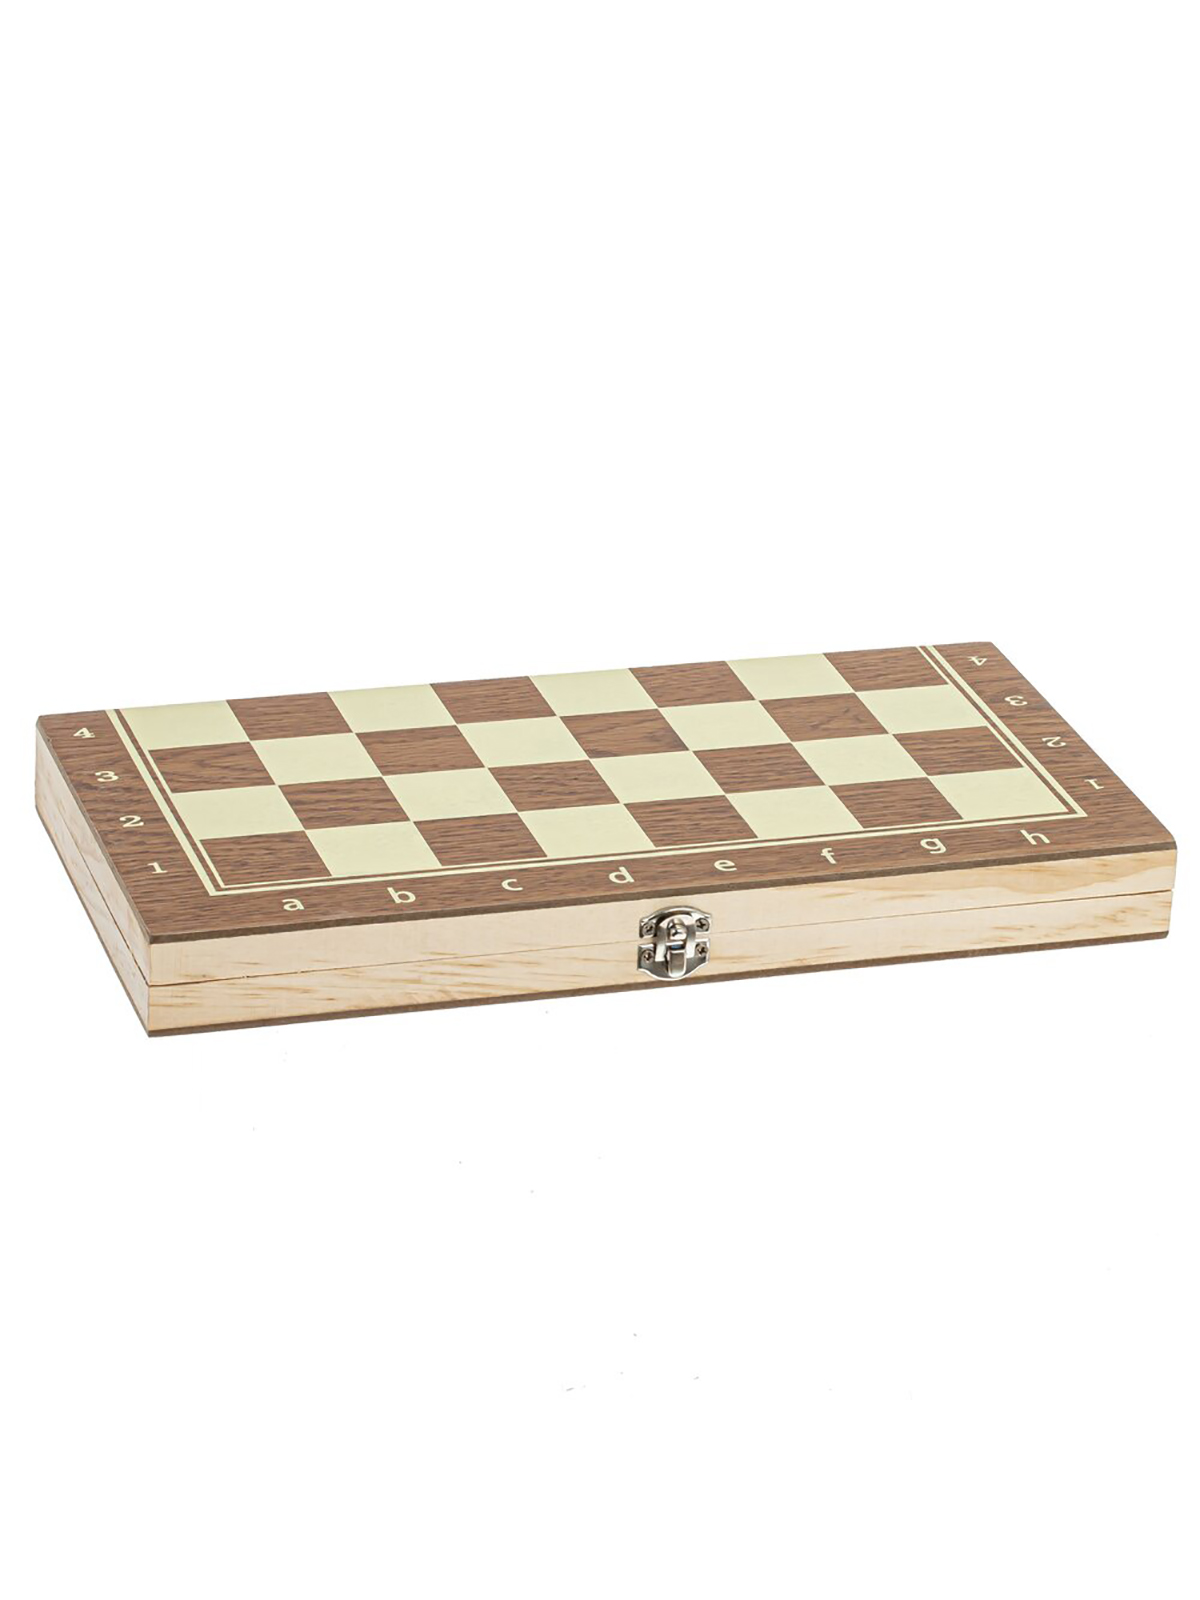 Шахматы шашки нарды 3 в 1 Remecoclub деревянные 796260 29x14,5x3 см настольная игра 3 в 1 шахматы шашки нарды деревянная доска 40 х 40 см